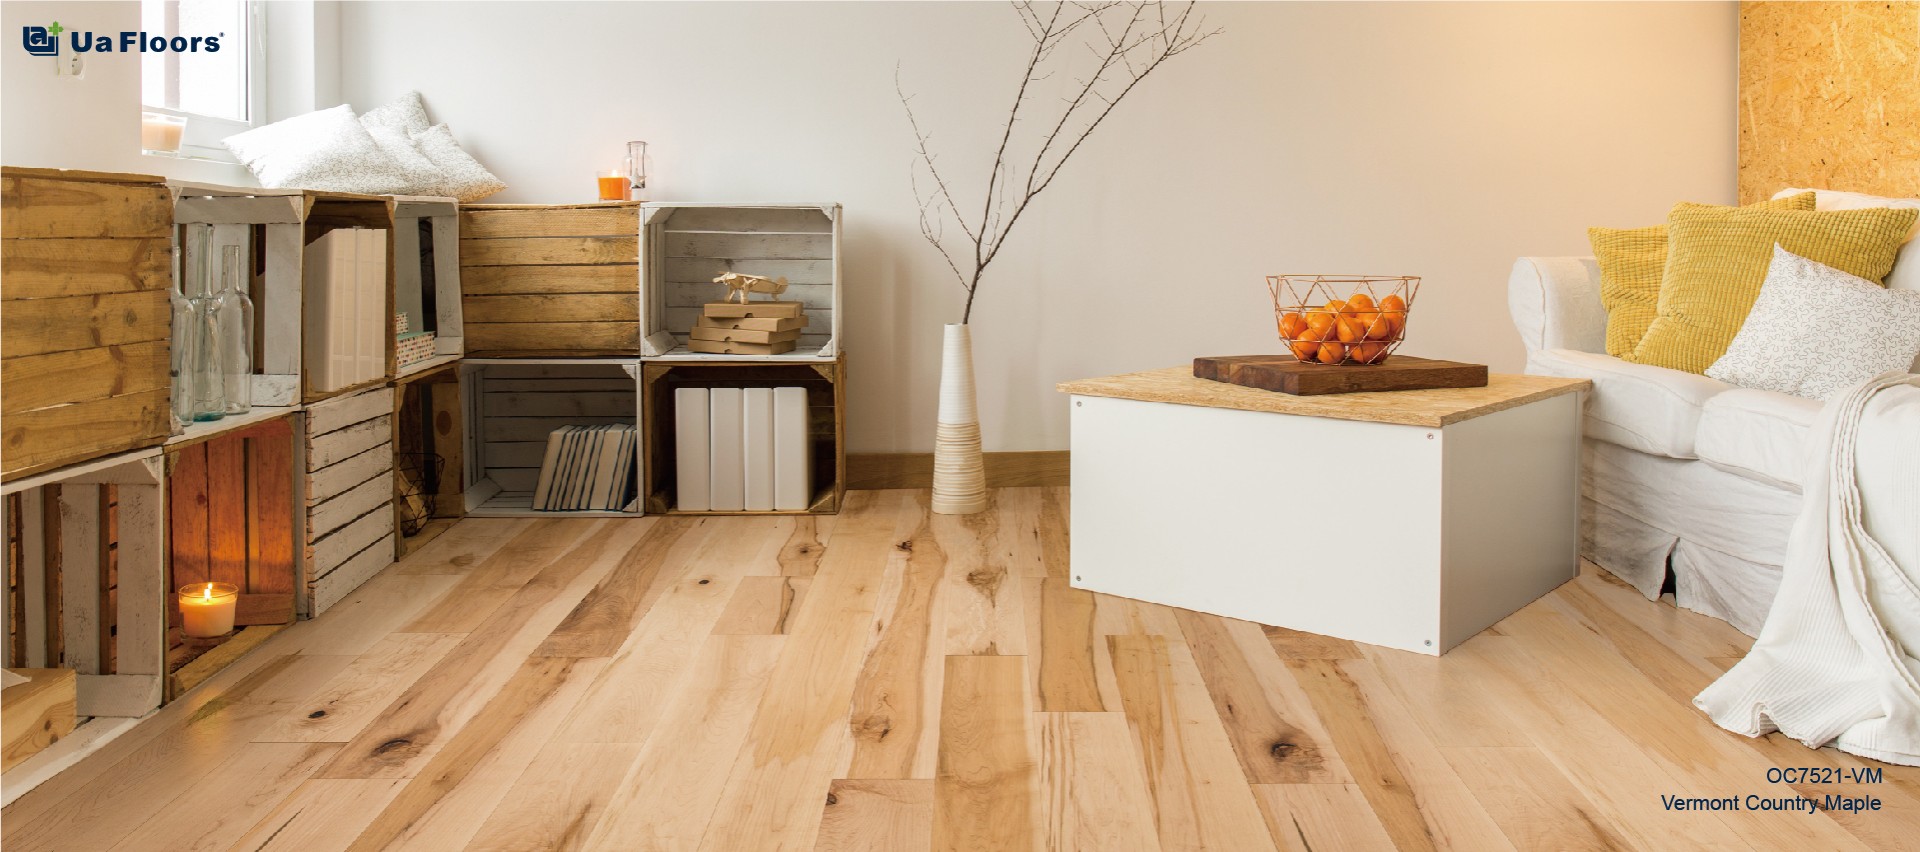 Stylish And Durable Maple Engineered, Unfinished Maple Hardwood Flooring